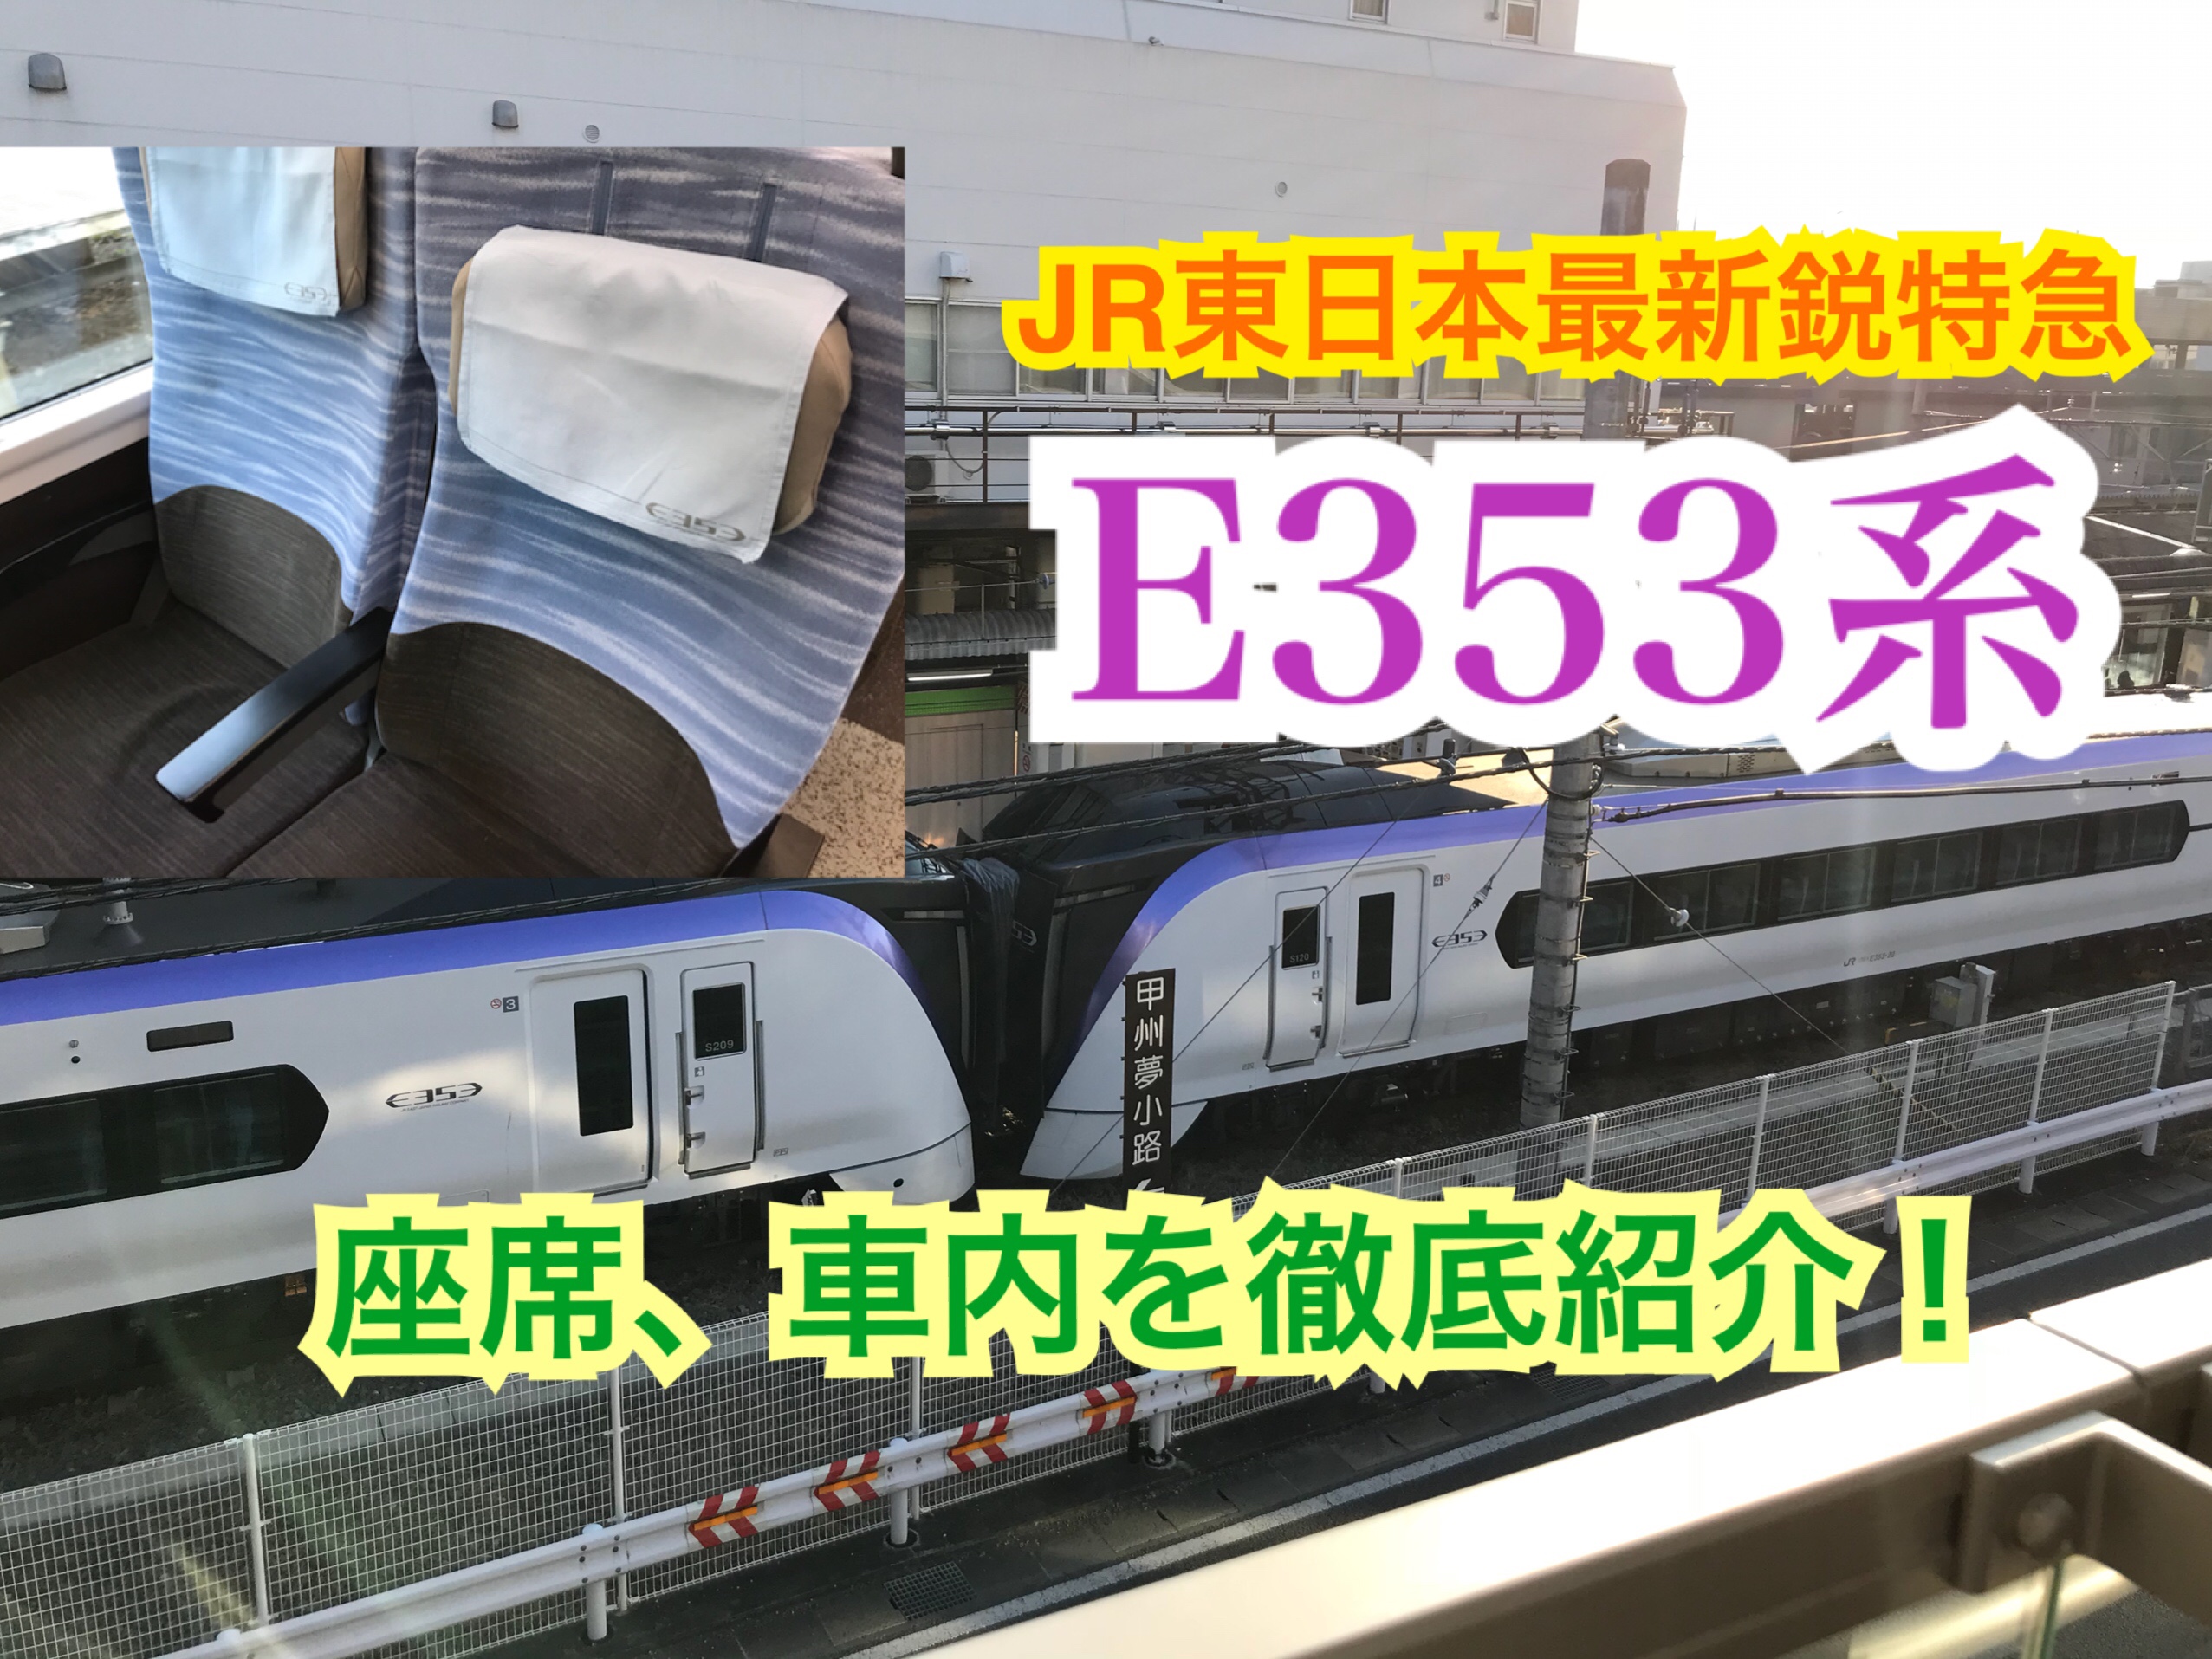 中央線特急E353系の車内や座席をご紹介！JR東日本最新の車内は快適！【中央線特急乗継の旅】